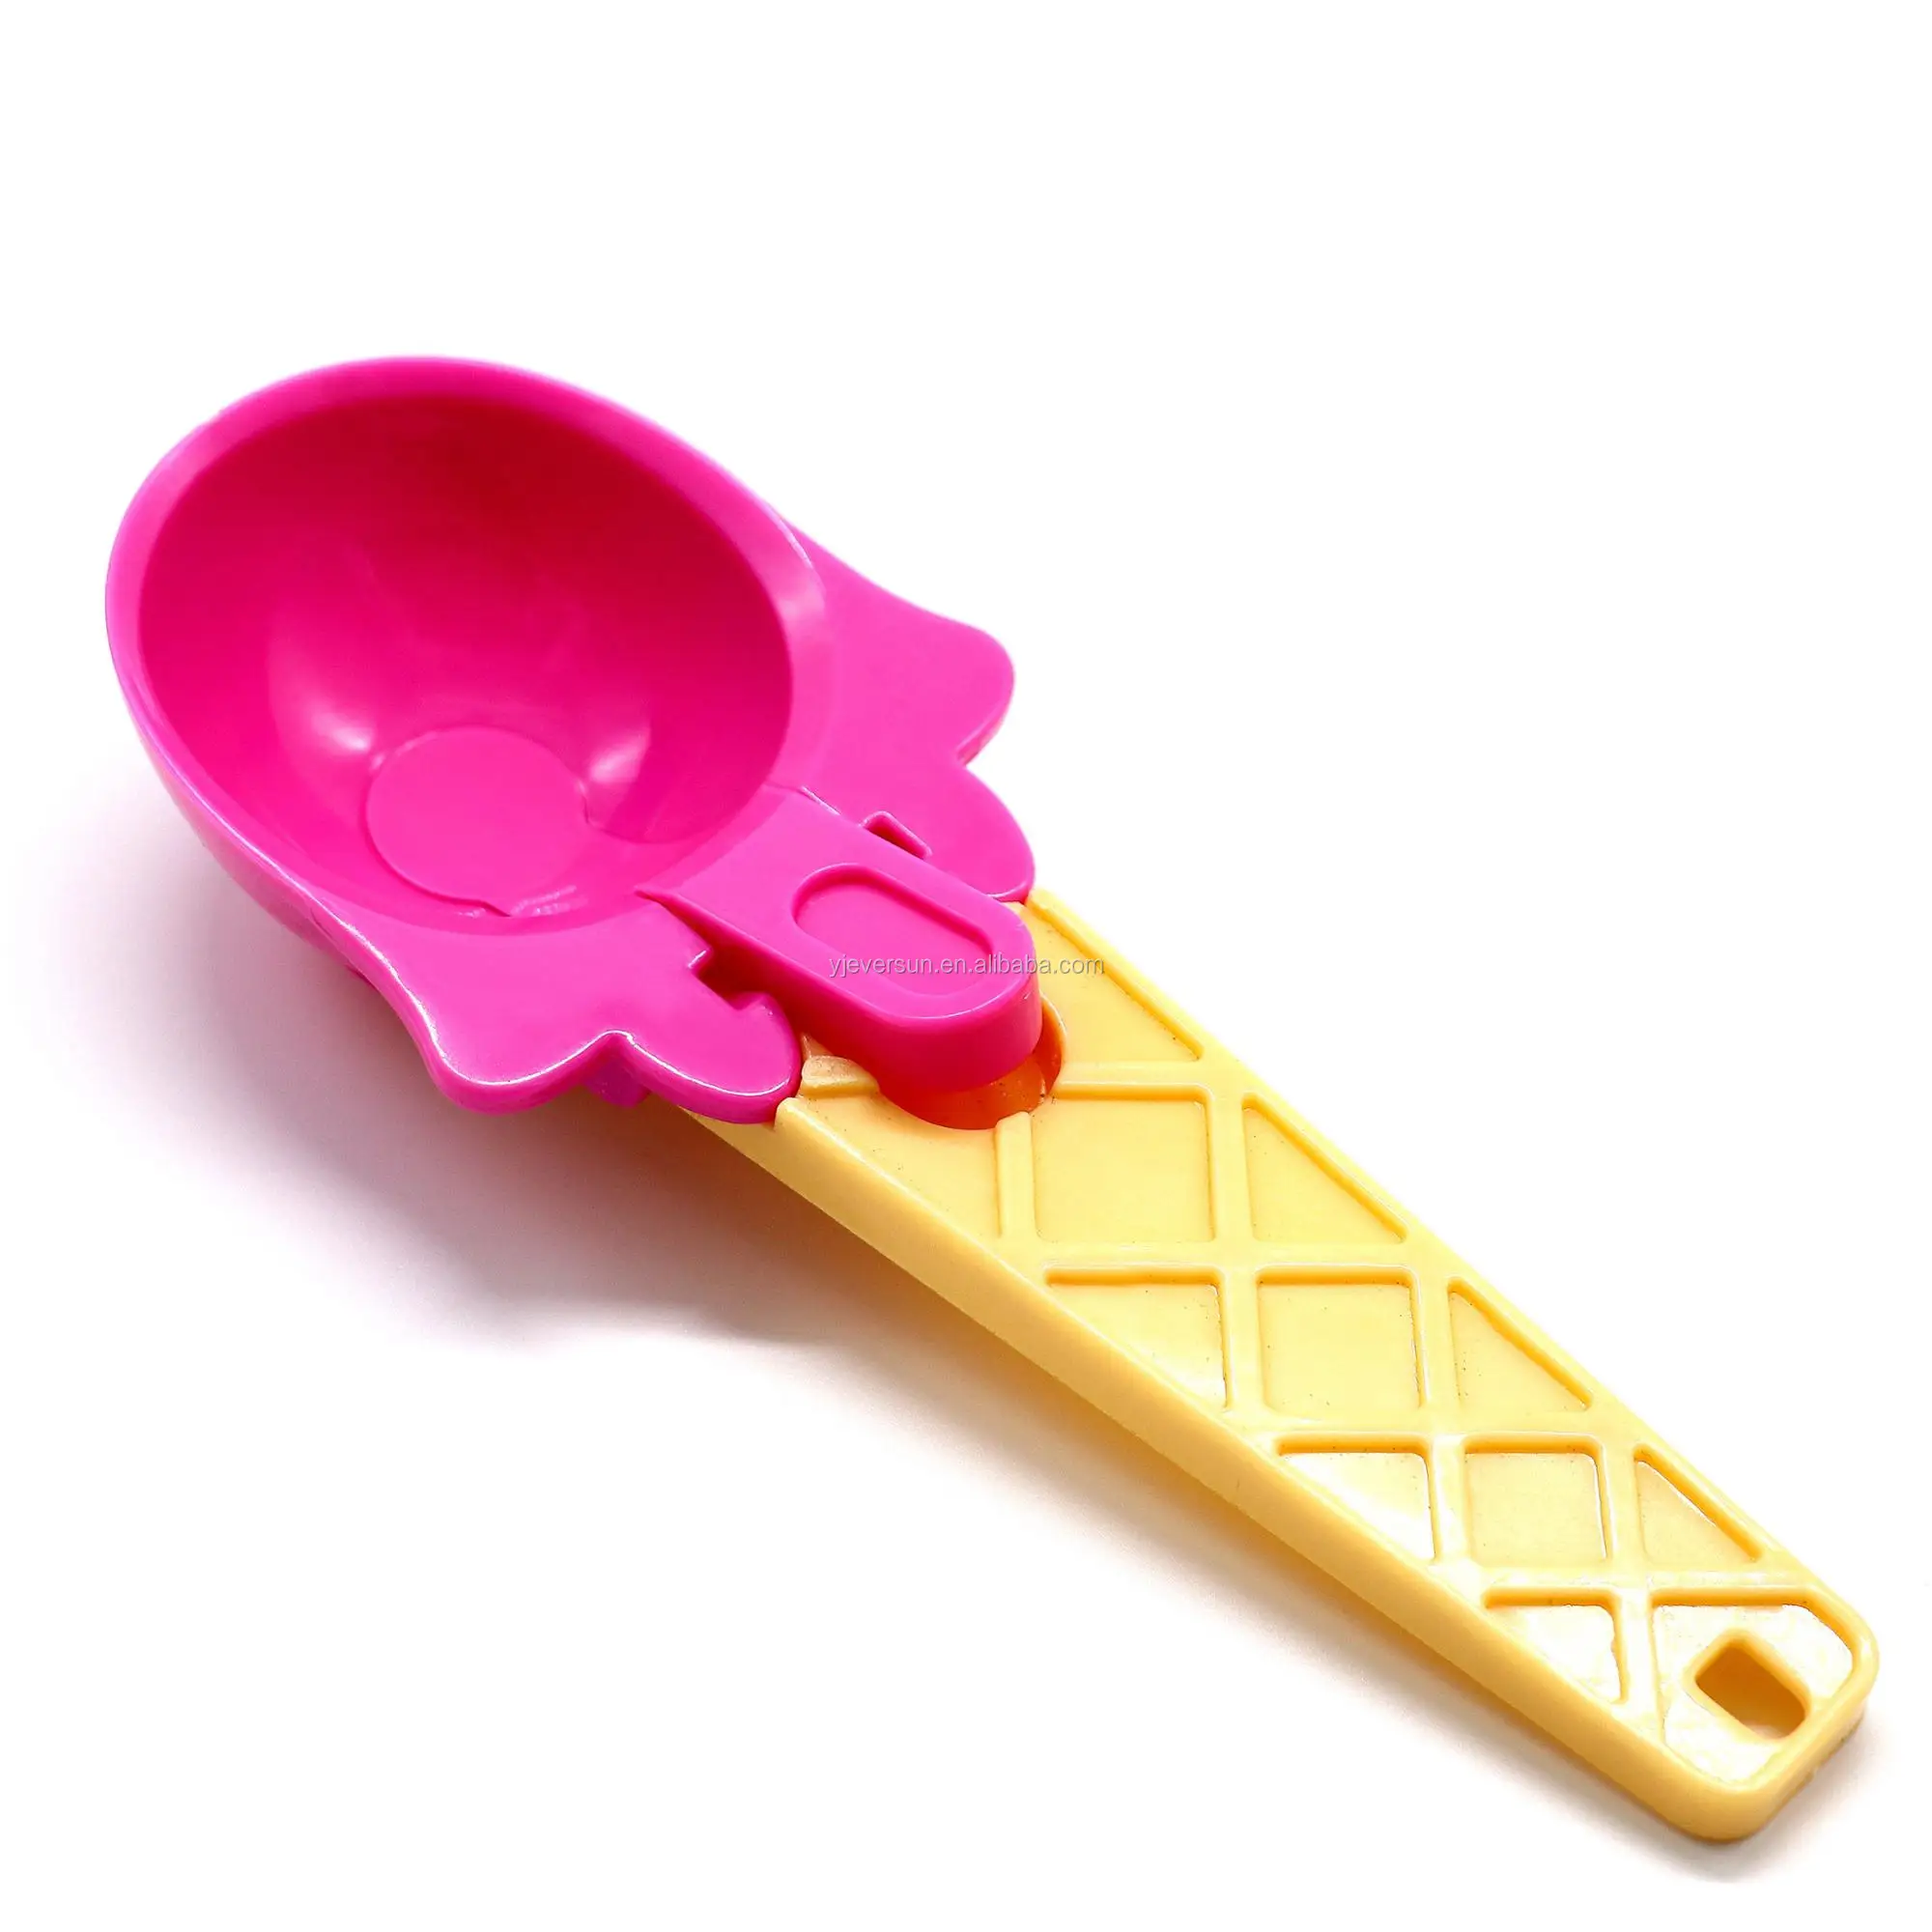 Plastic Ice Cream Scoop/ice Cream Tools With Handle - Buy 